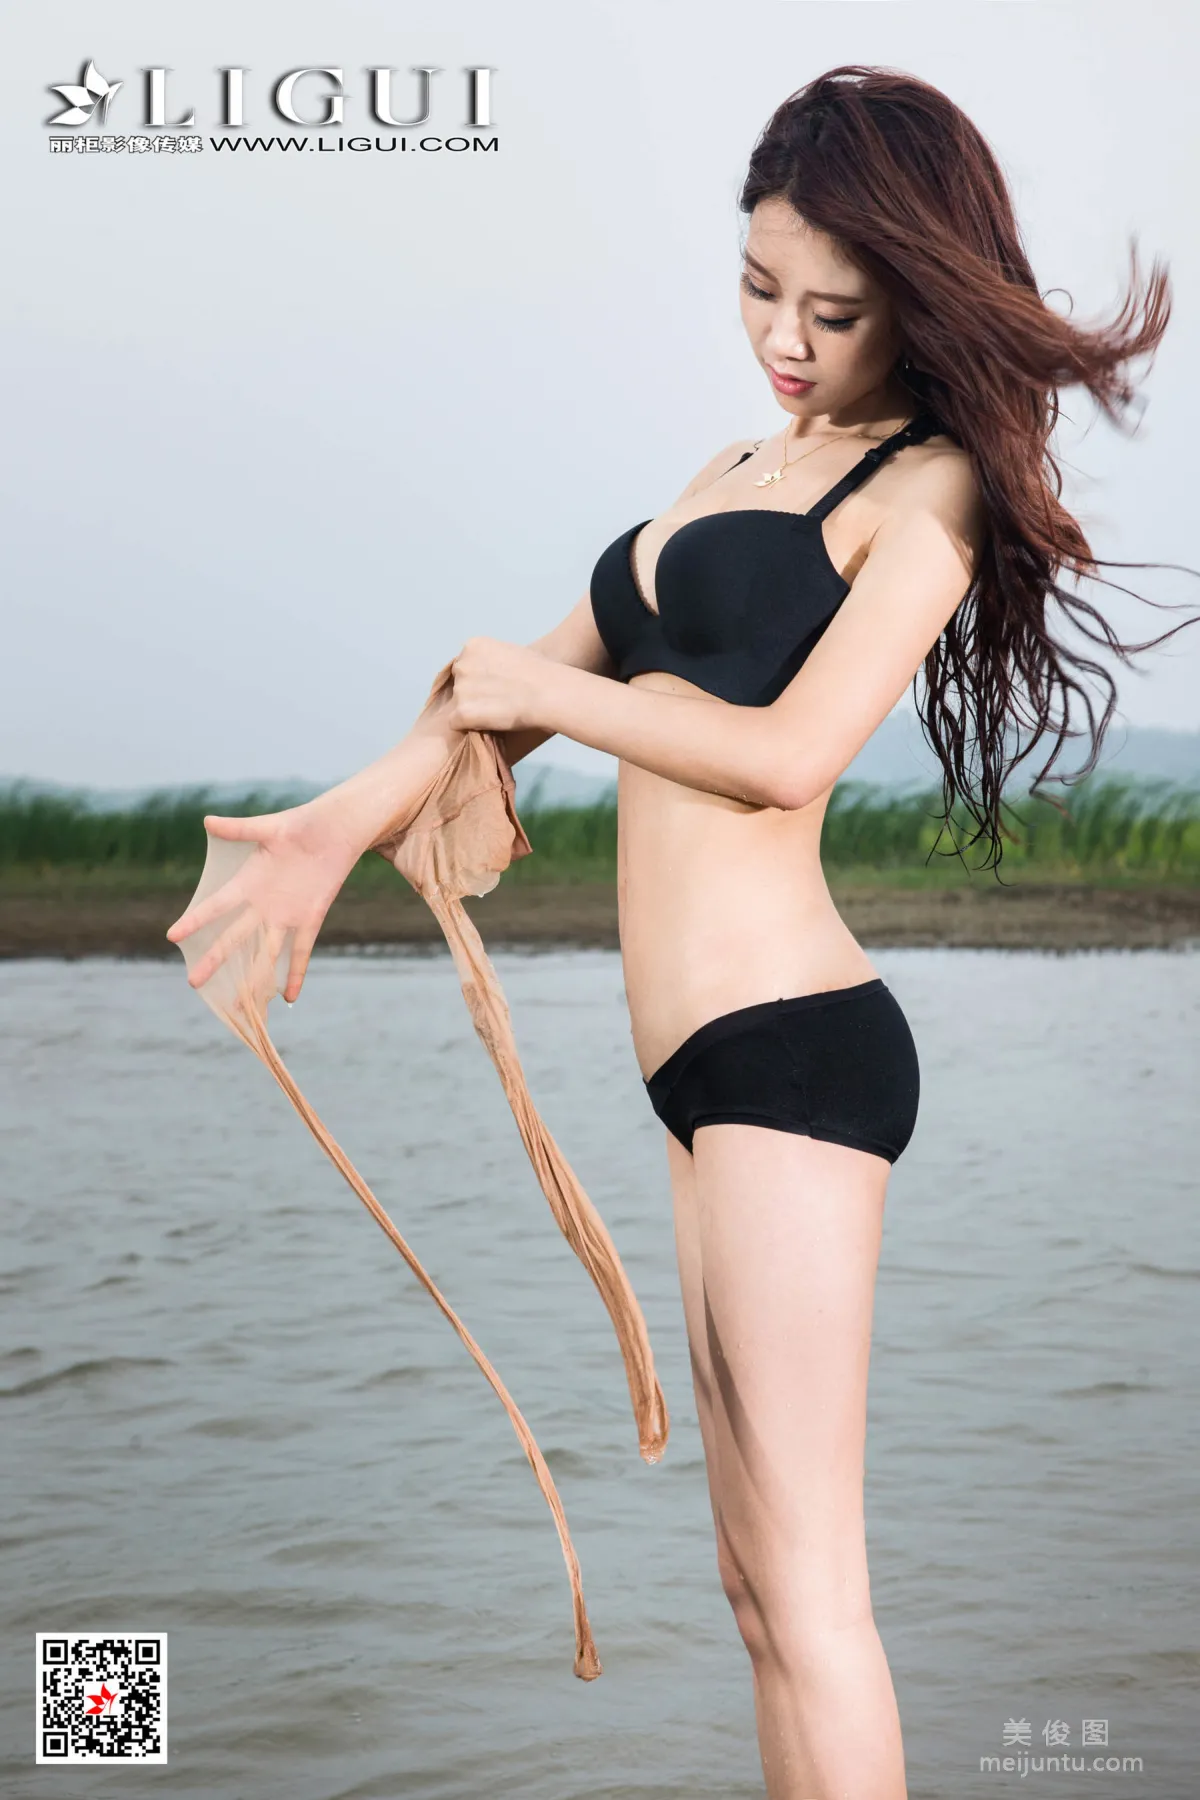 [丽柜Ligui] Model 语寒 《海边丝袜人体》 写真集96